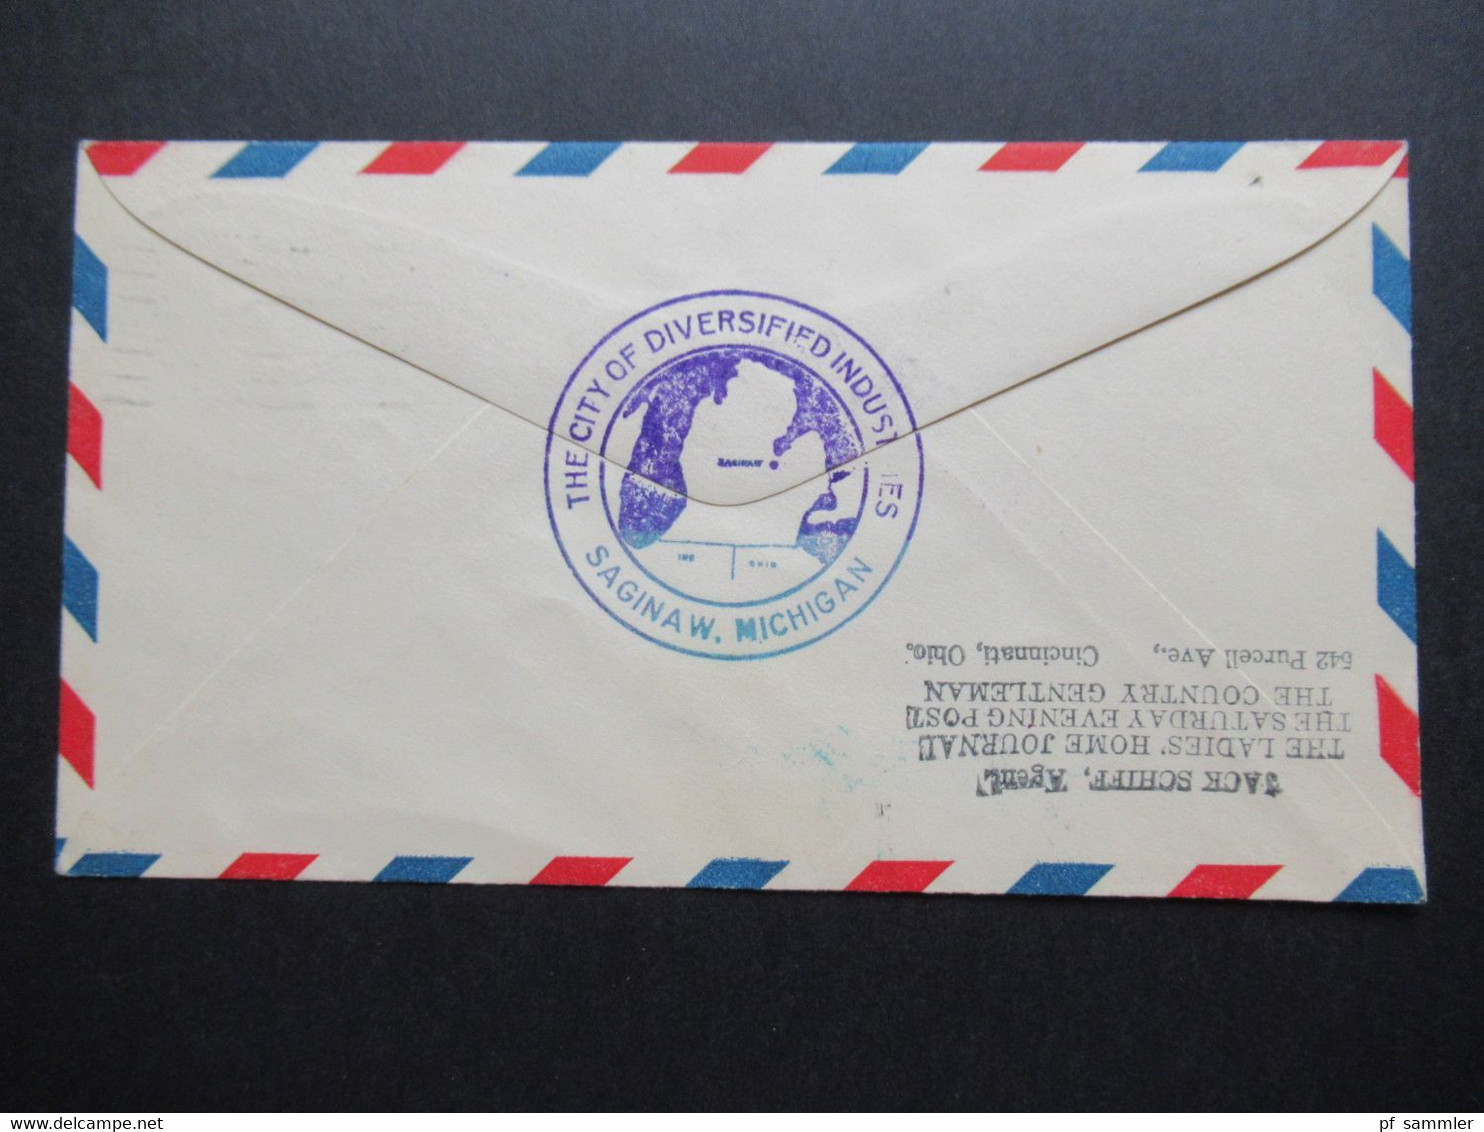 USA Ganzsache Air Mail 21.5.1929 Second Anniversary Lindbergh Day Saginaw Michigan mit Unterschrift des Postmaster